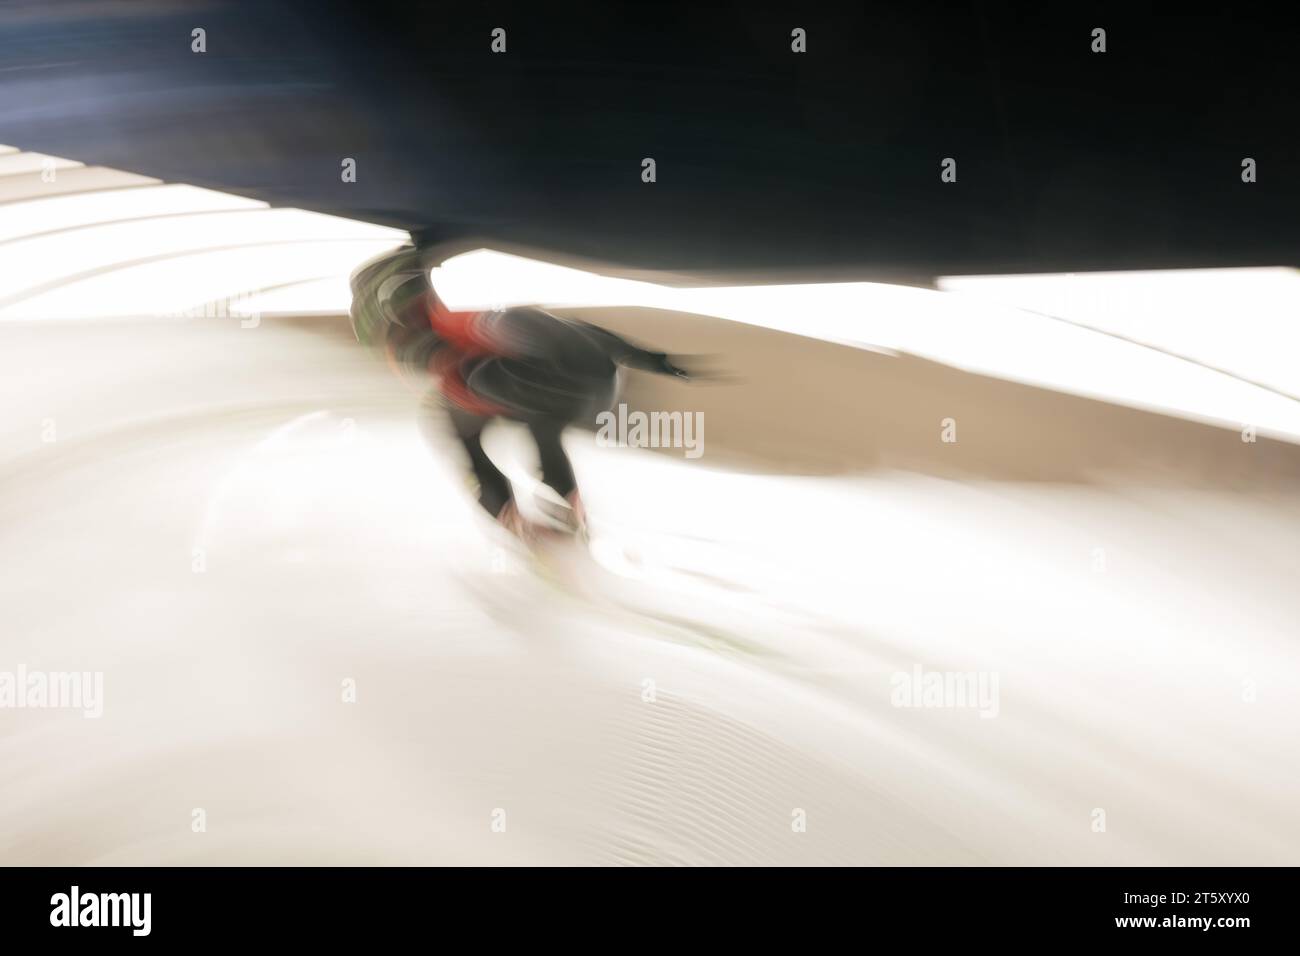 Skispringen allgemein FIS Welt Cup Skispringen der Frauen in Hinterzarten, Deutschland AM 15.12.2017 Foto Stock